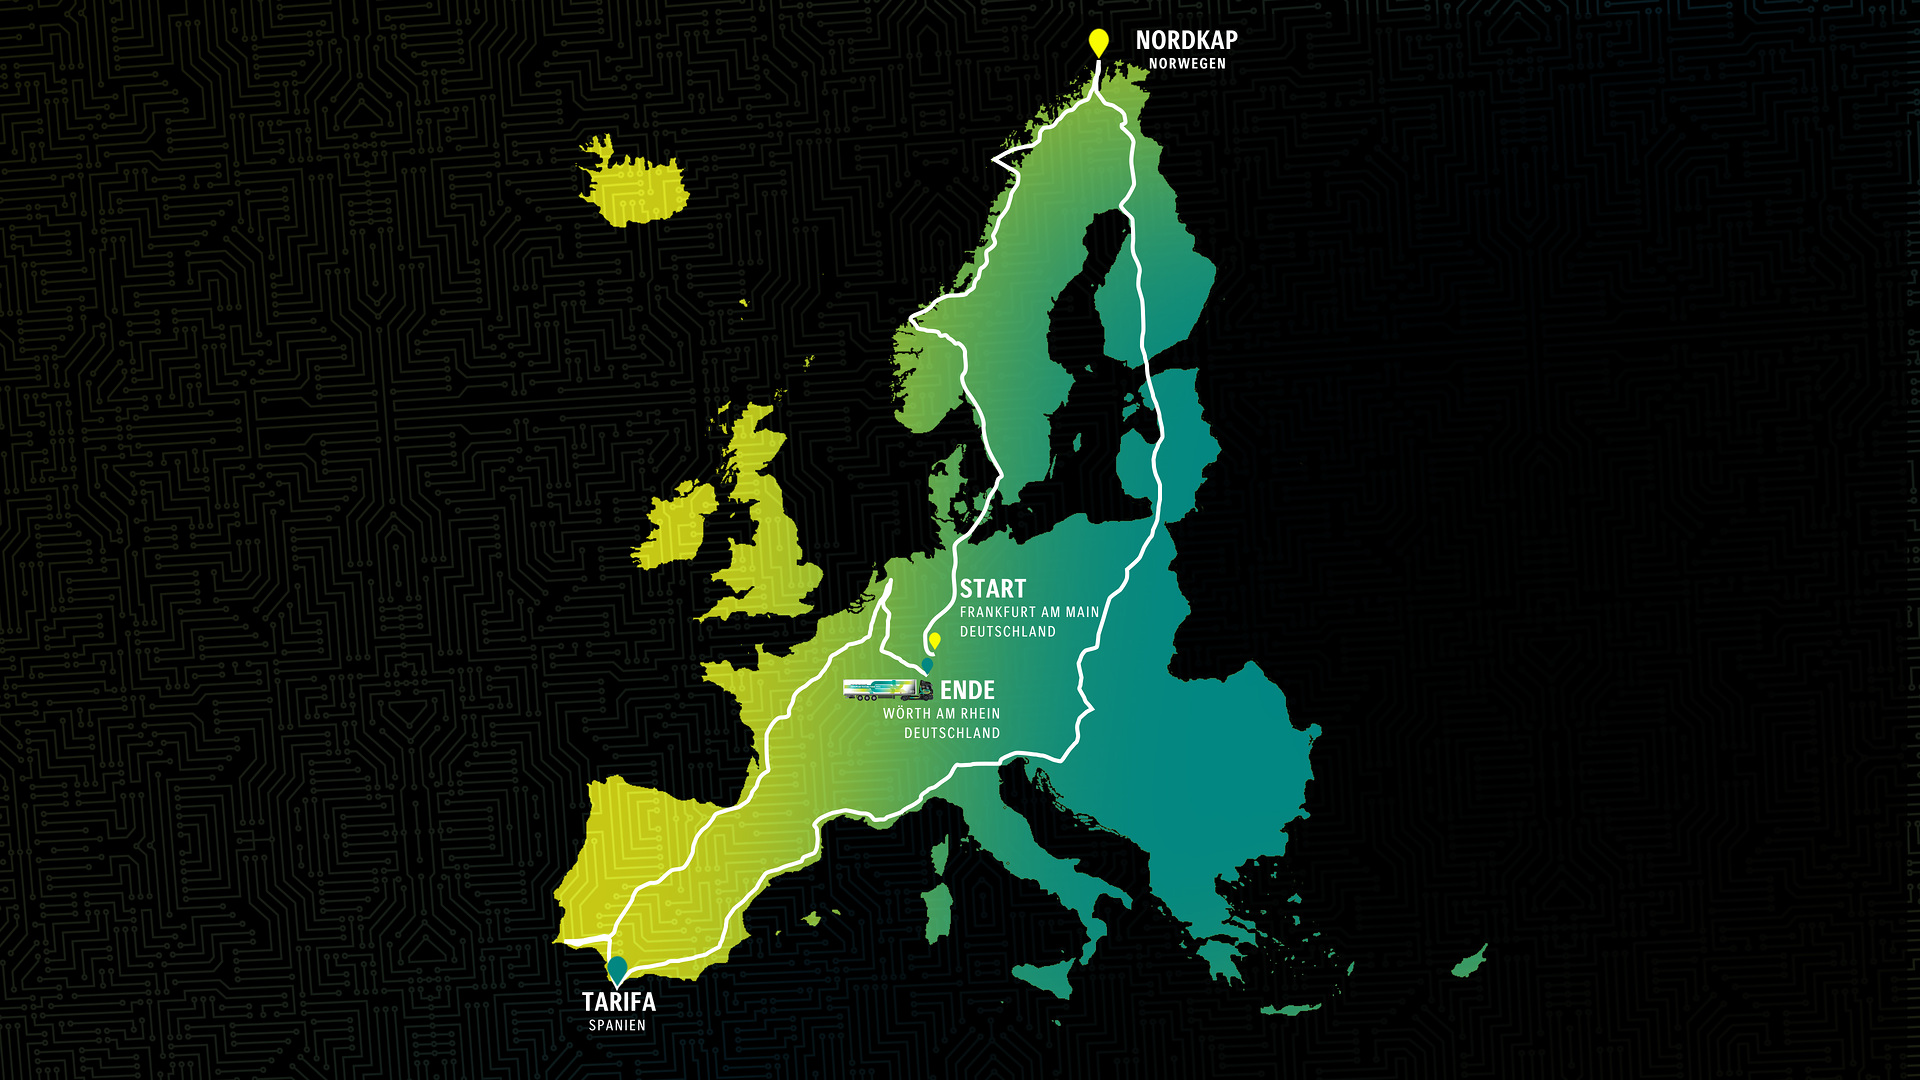 Über 15.000 vollelektrisch gefahrene Kilometer: Mercedes-Benz eActros 600 Test-Tour durch Europa erfolgreich beendet